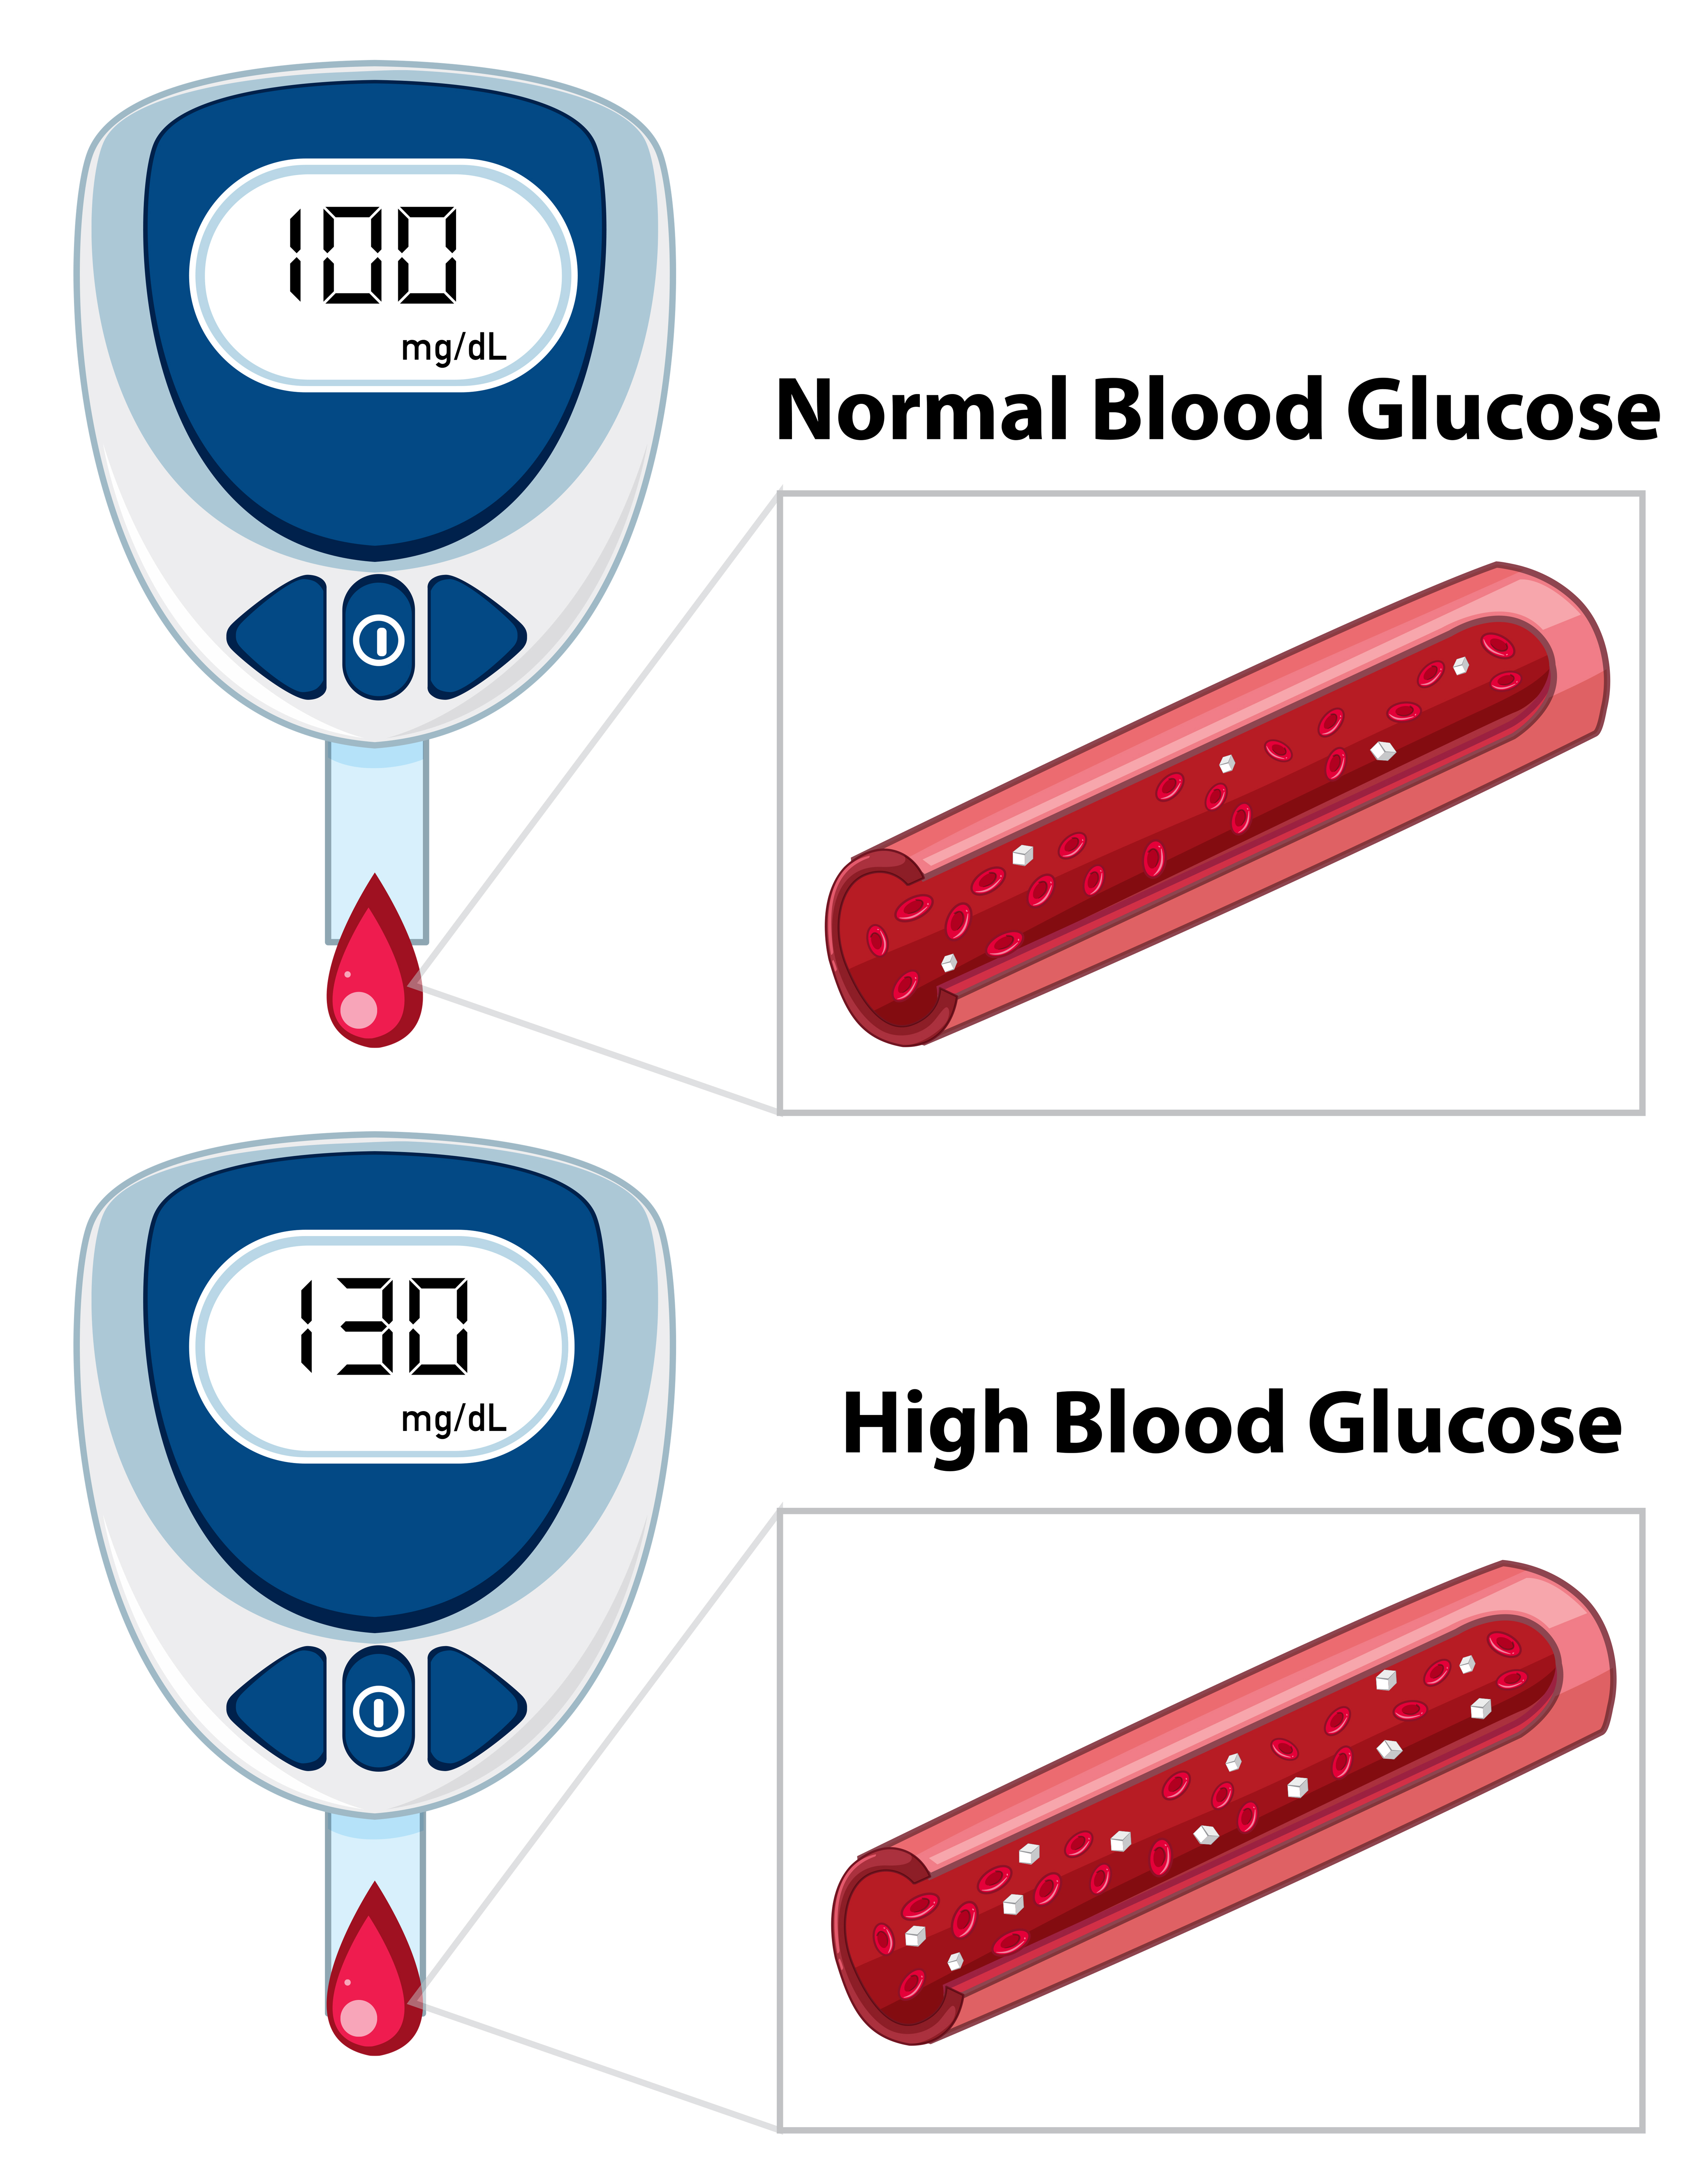 Medical blood glucose measurement 519057 Download Free Vectors, Clipart Graphics & Vector Art